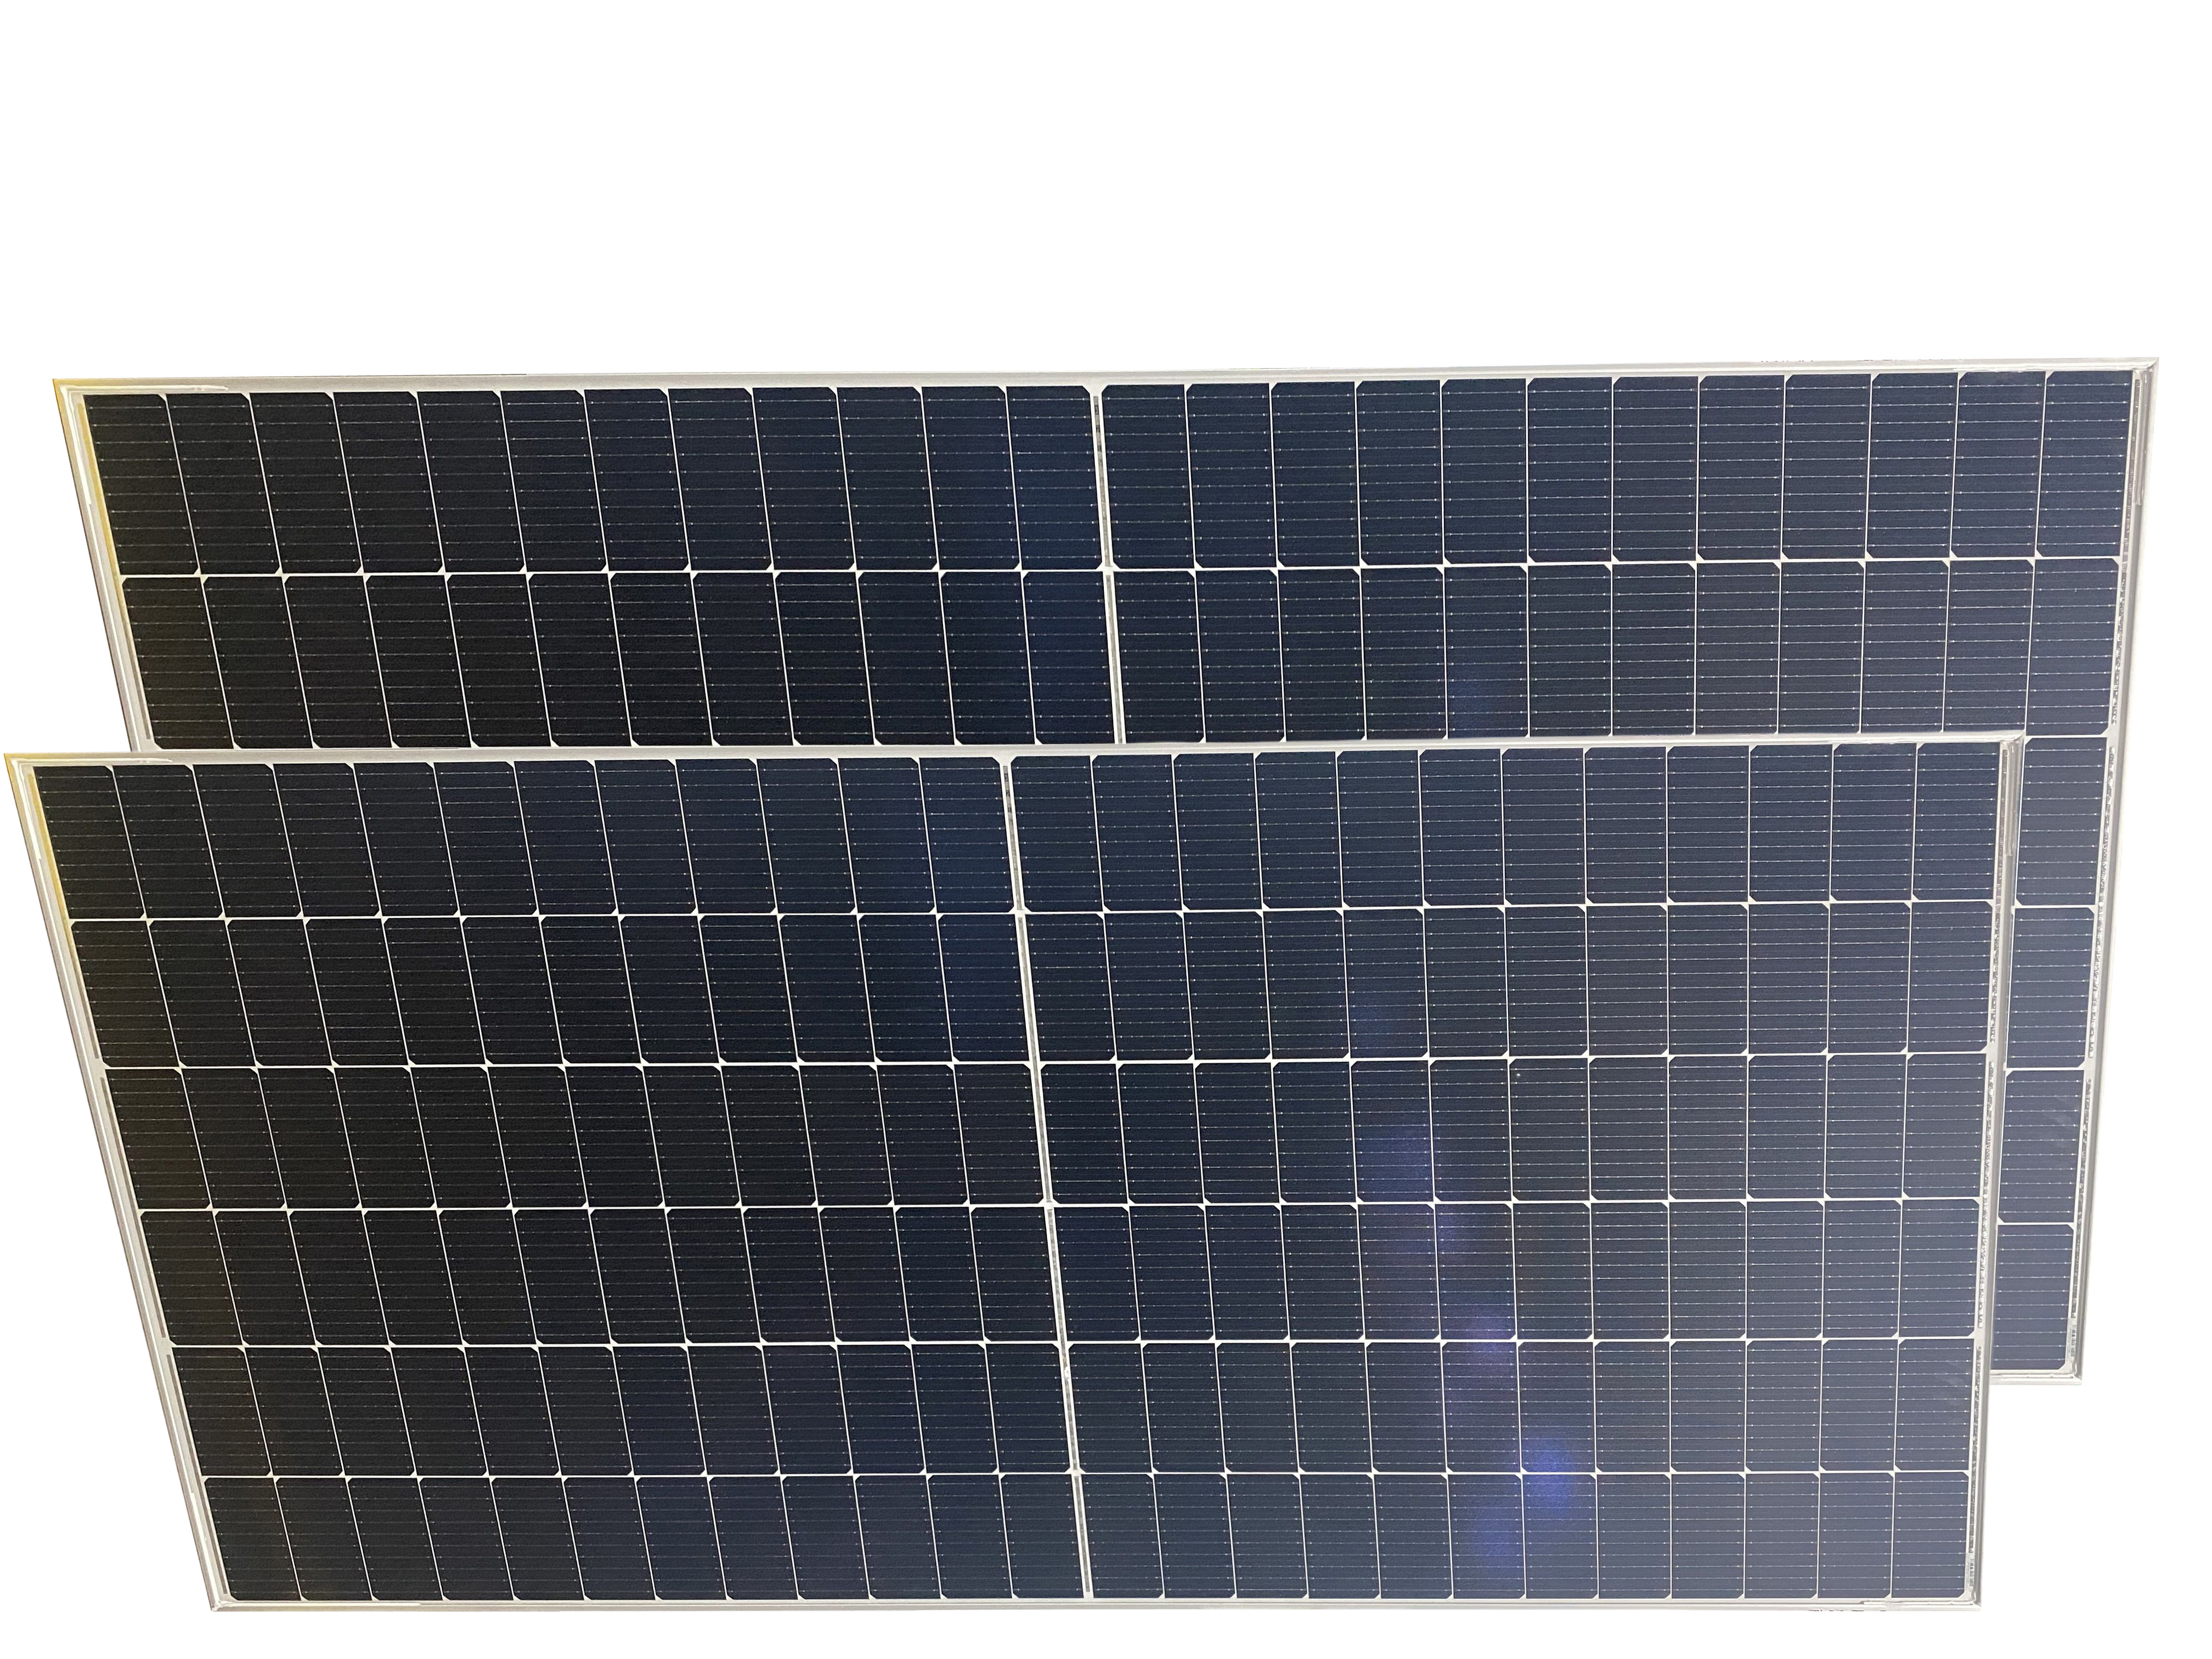 Brightway Solar Most Popular Longji 550 Watt Module for Home